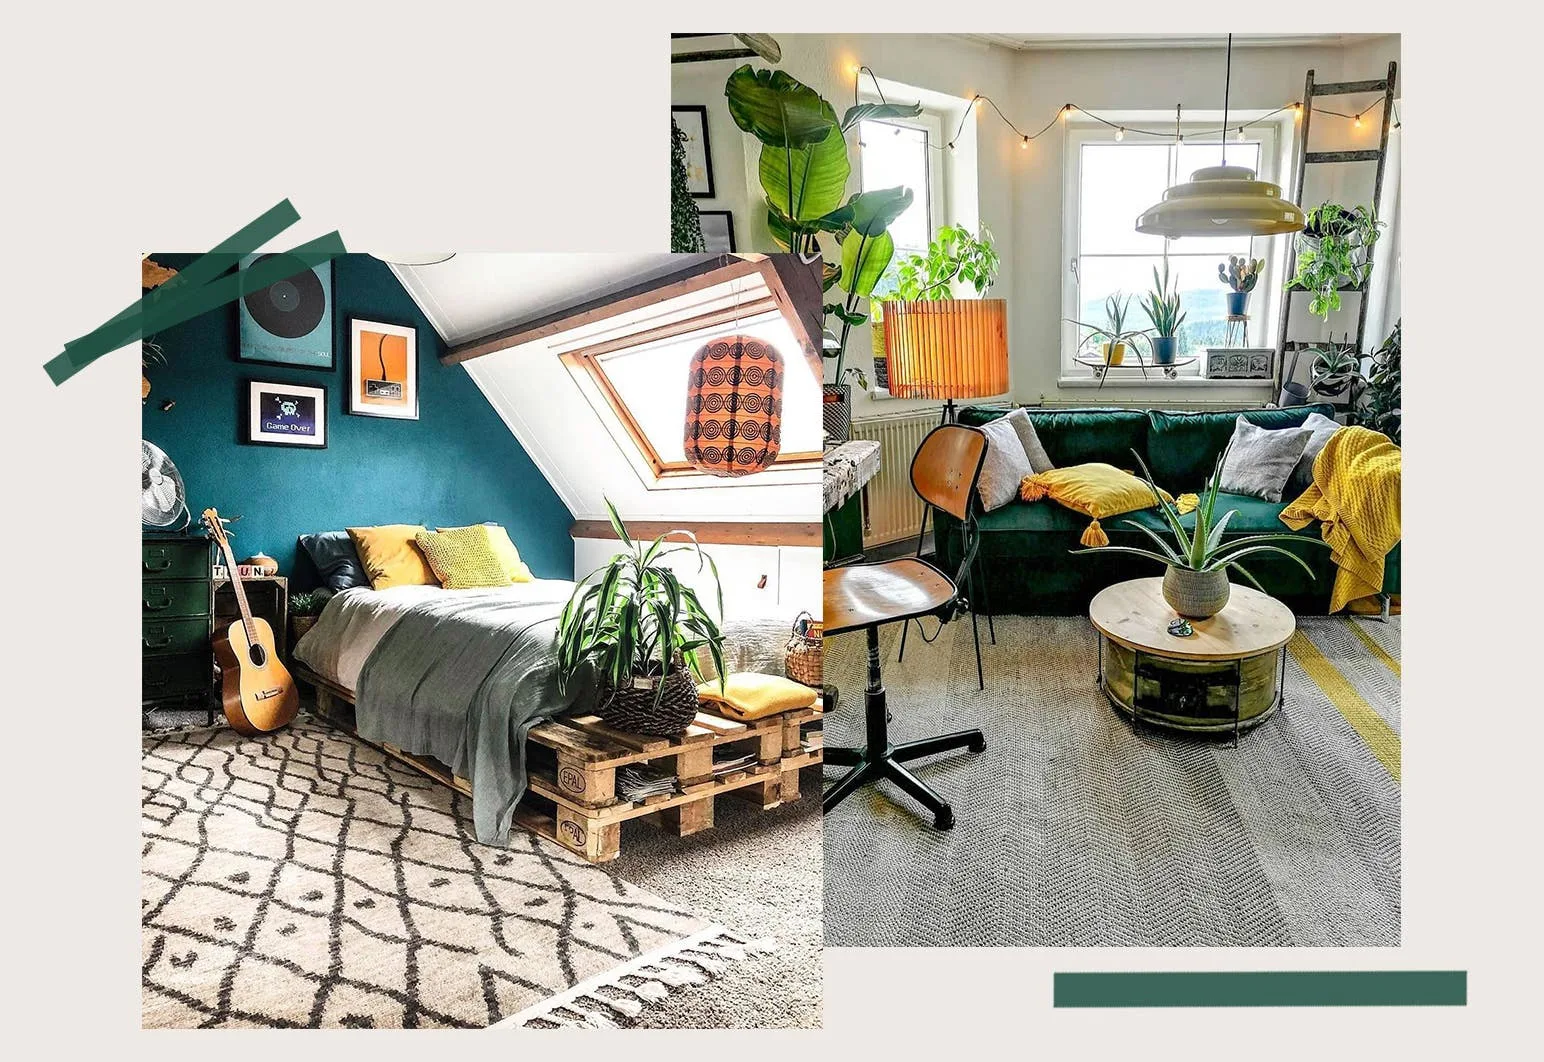 Buntes WG-Zimmer in Grün und Gelb eingerichtet mit vielen Pflanzen und Plattenmöbeln